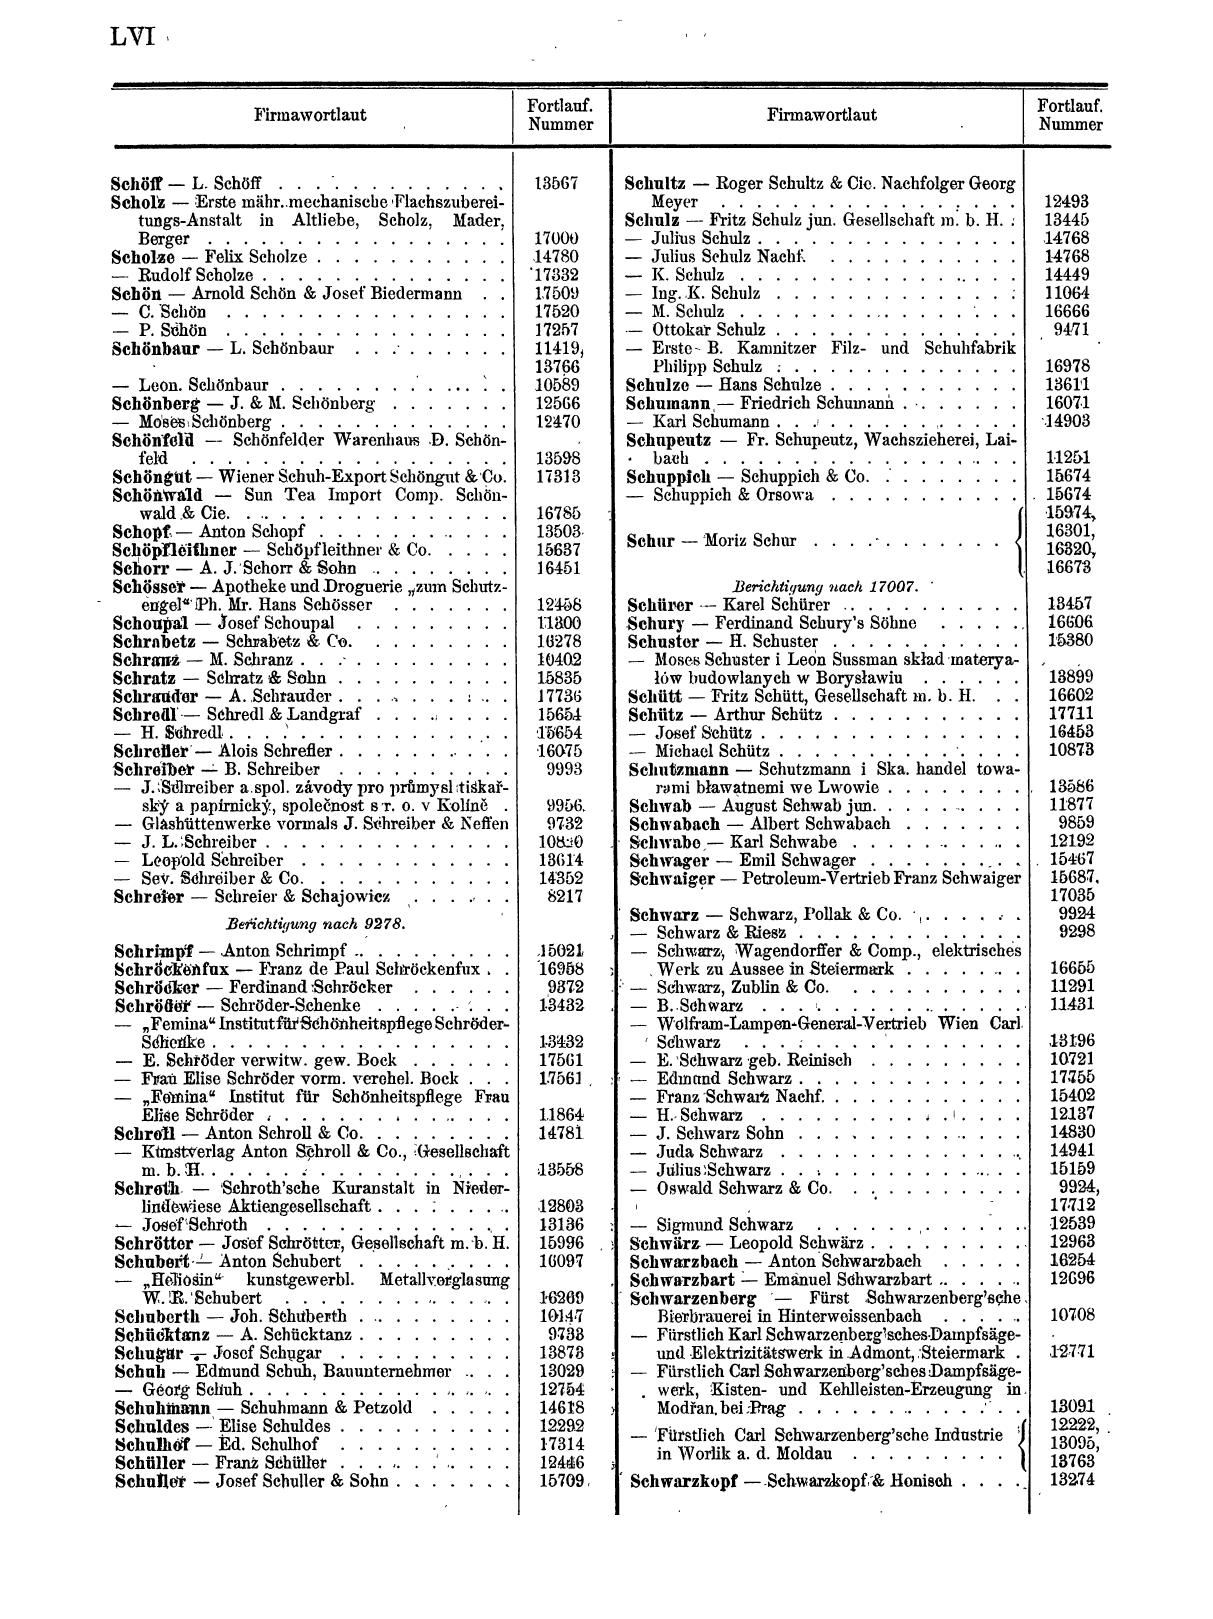 Zentralblatt für die Eintragungen in das Handelsregister 1913, Teil 2 - Seite 60